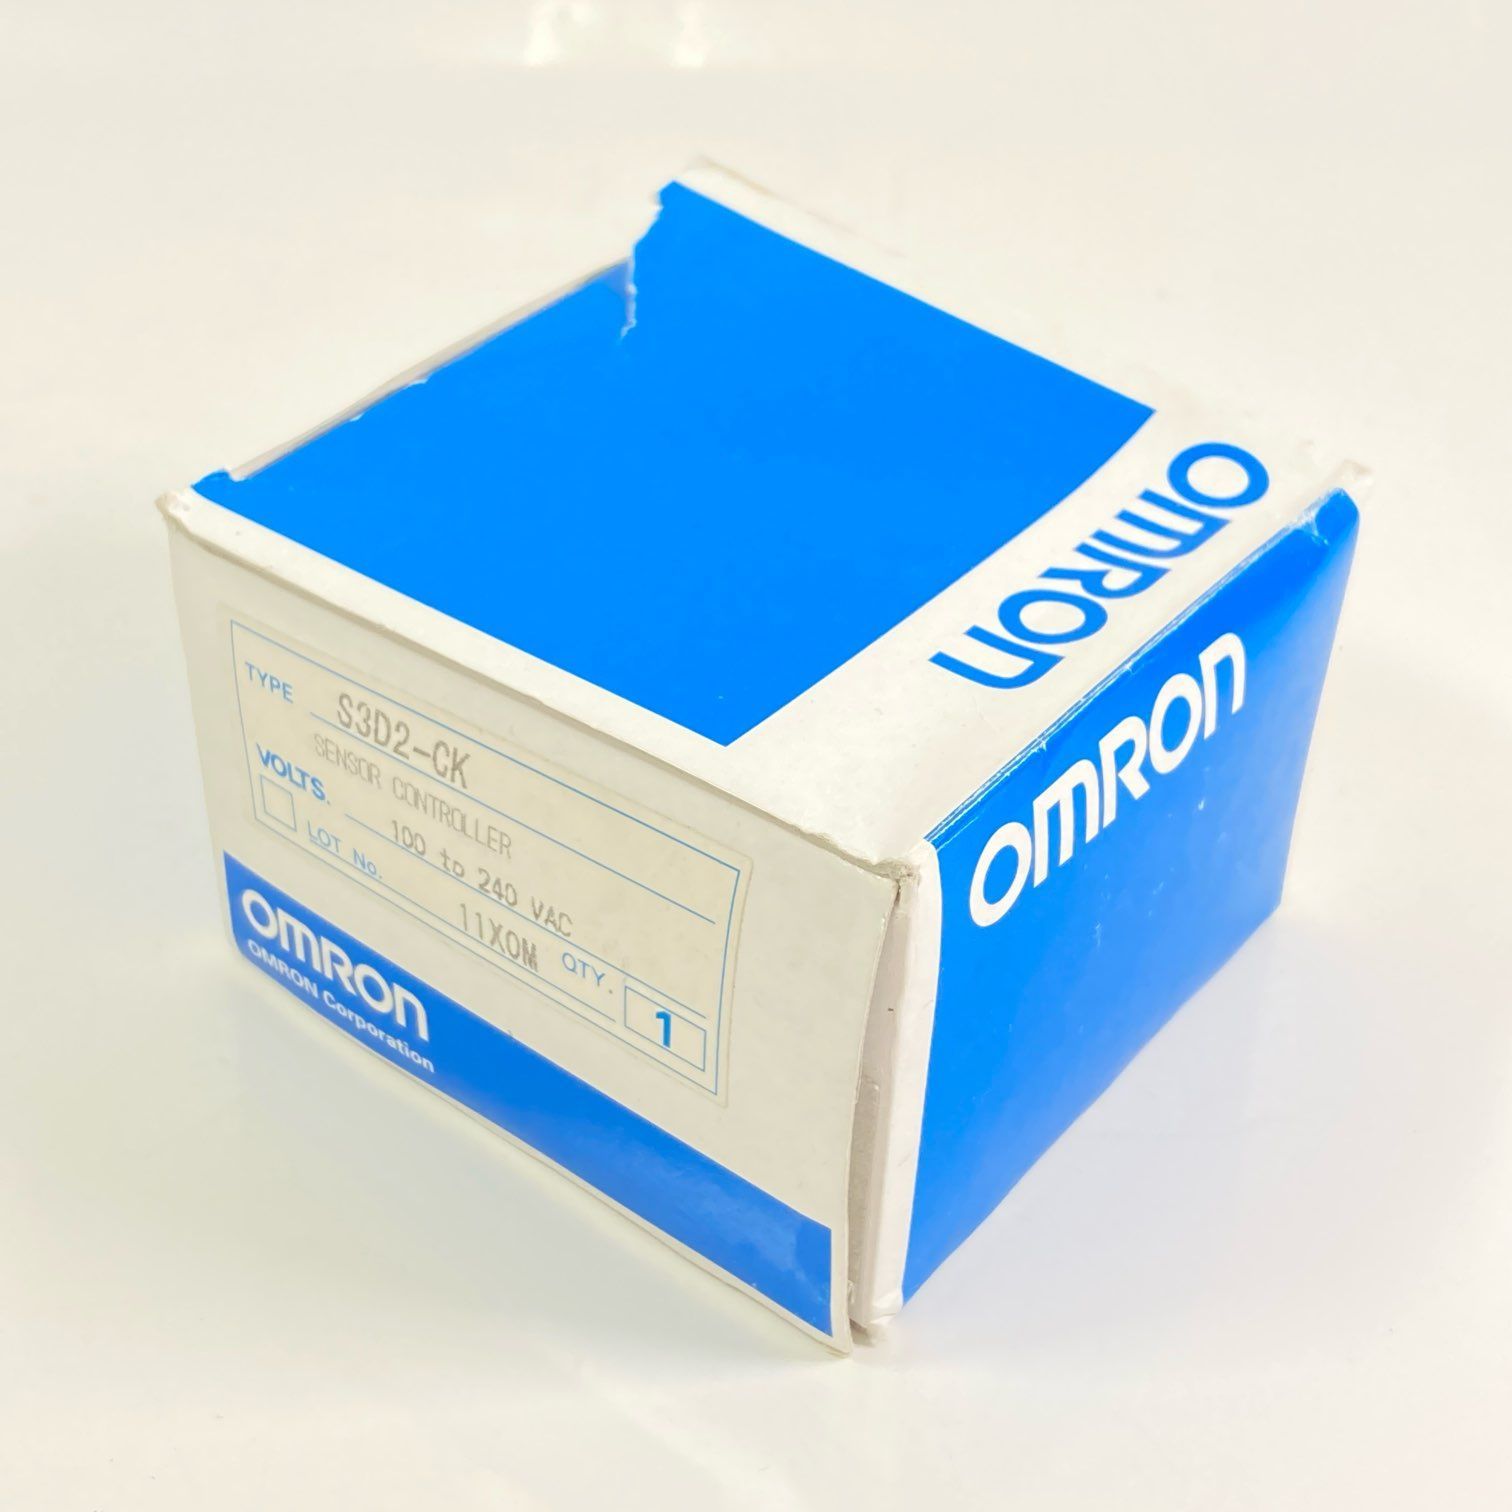 オムロン センサコントローラ S3D2-CK - アンプ